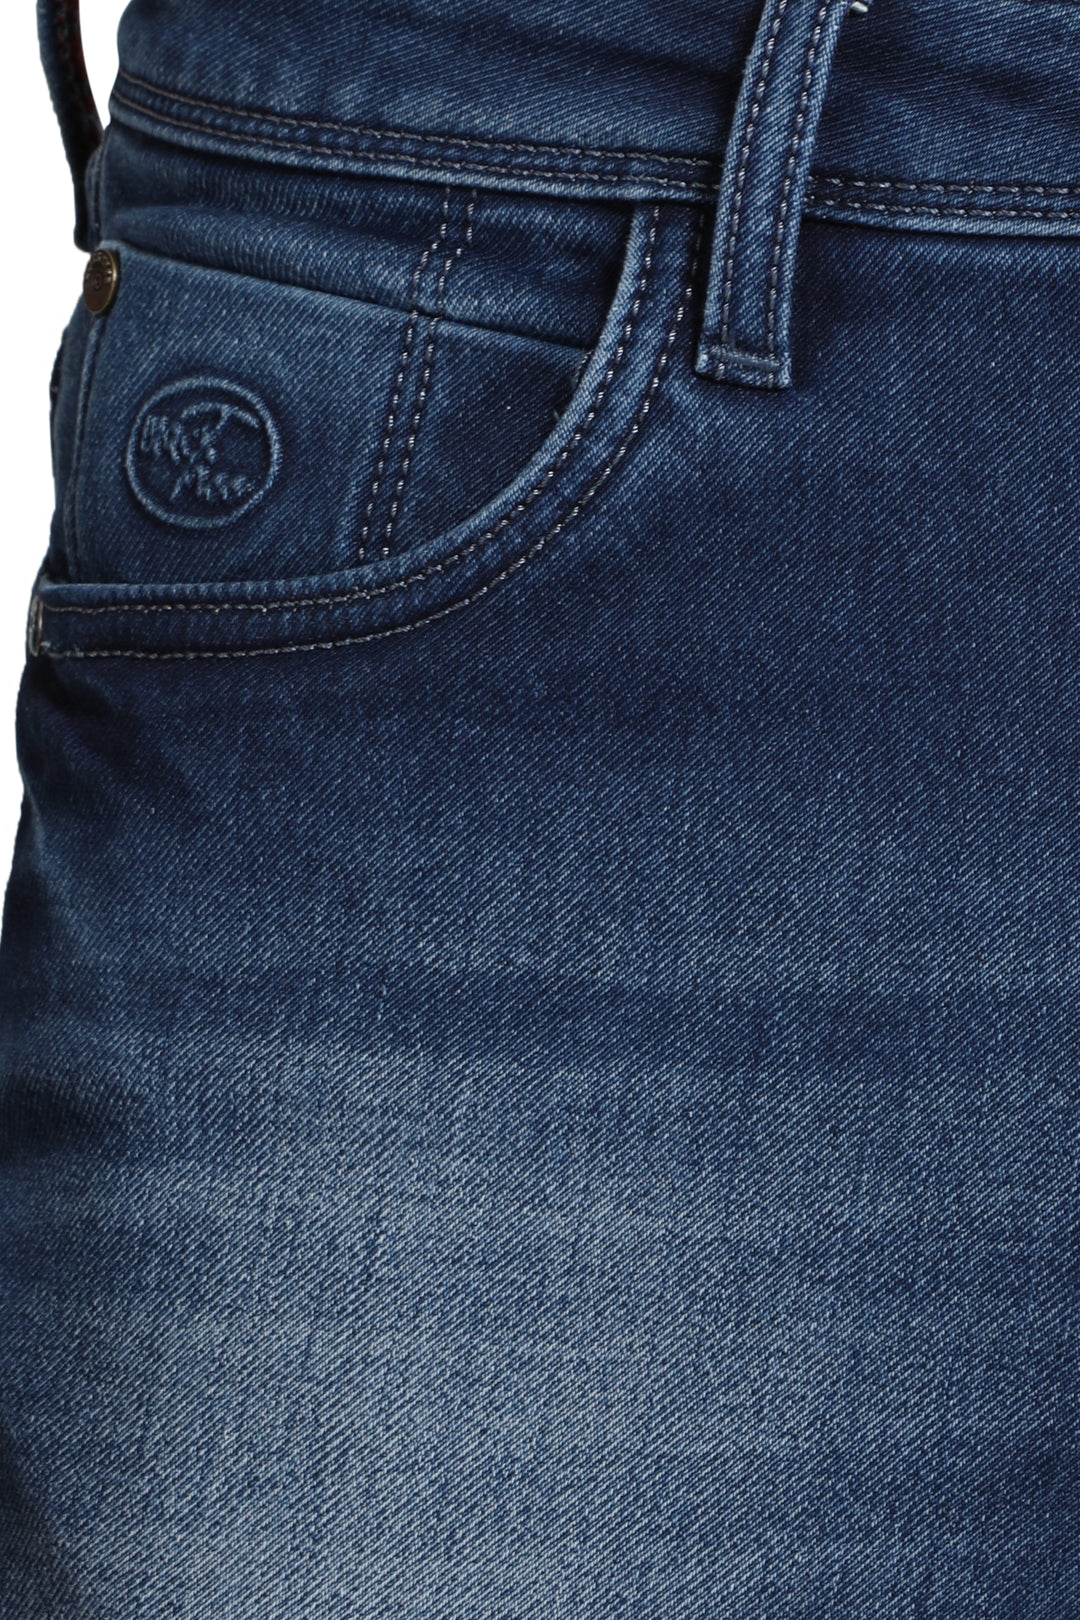 Black Tree Men's Designer Stretch Slim Fit Jeans for Men's BT002.